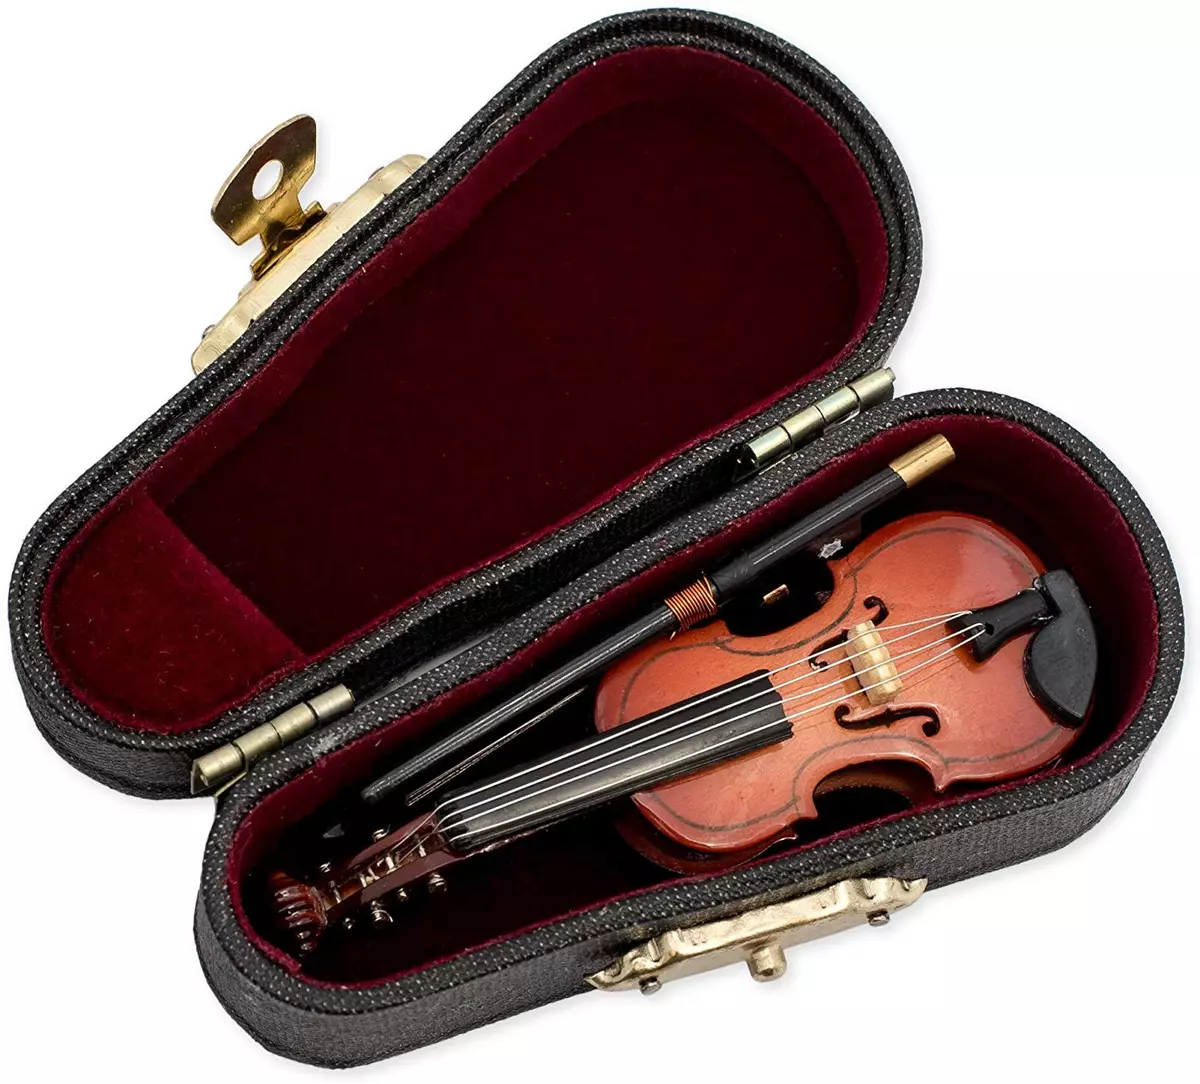 Casos per a violins: què cobreix els violins de la botiga? Revisió de les espècies i la regla d'elecció 25421_18